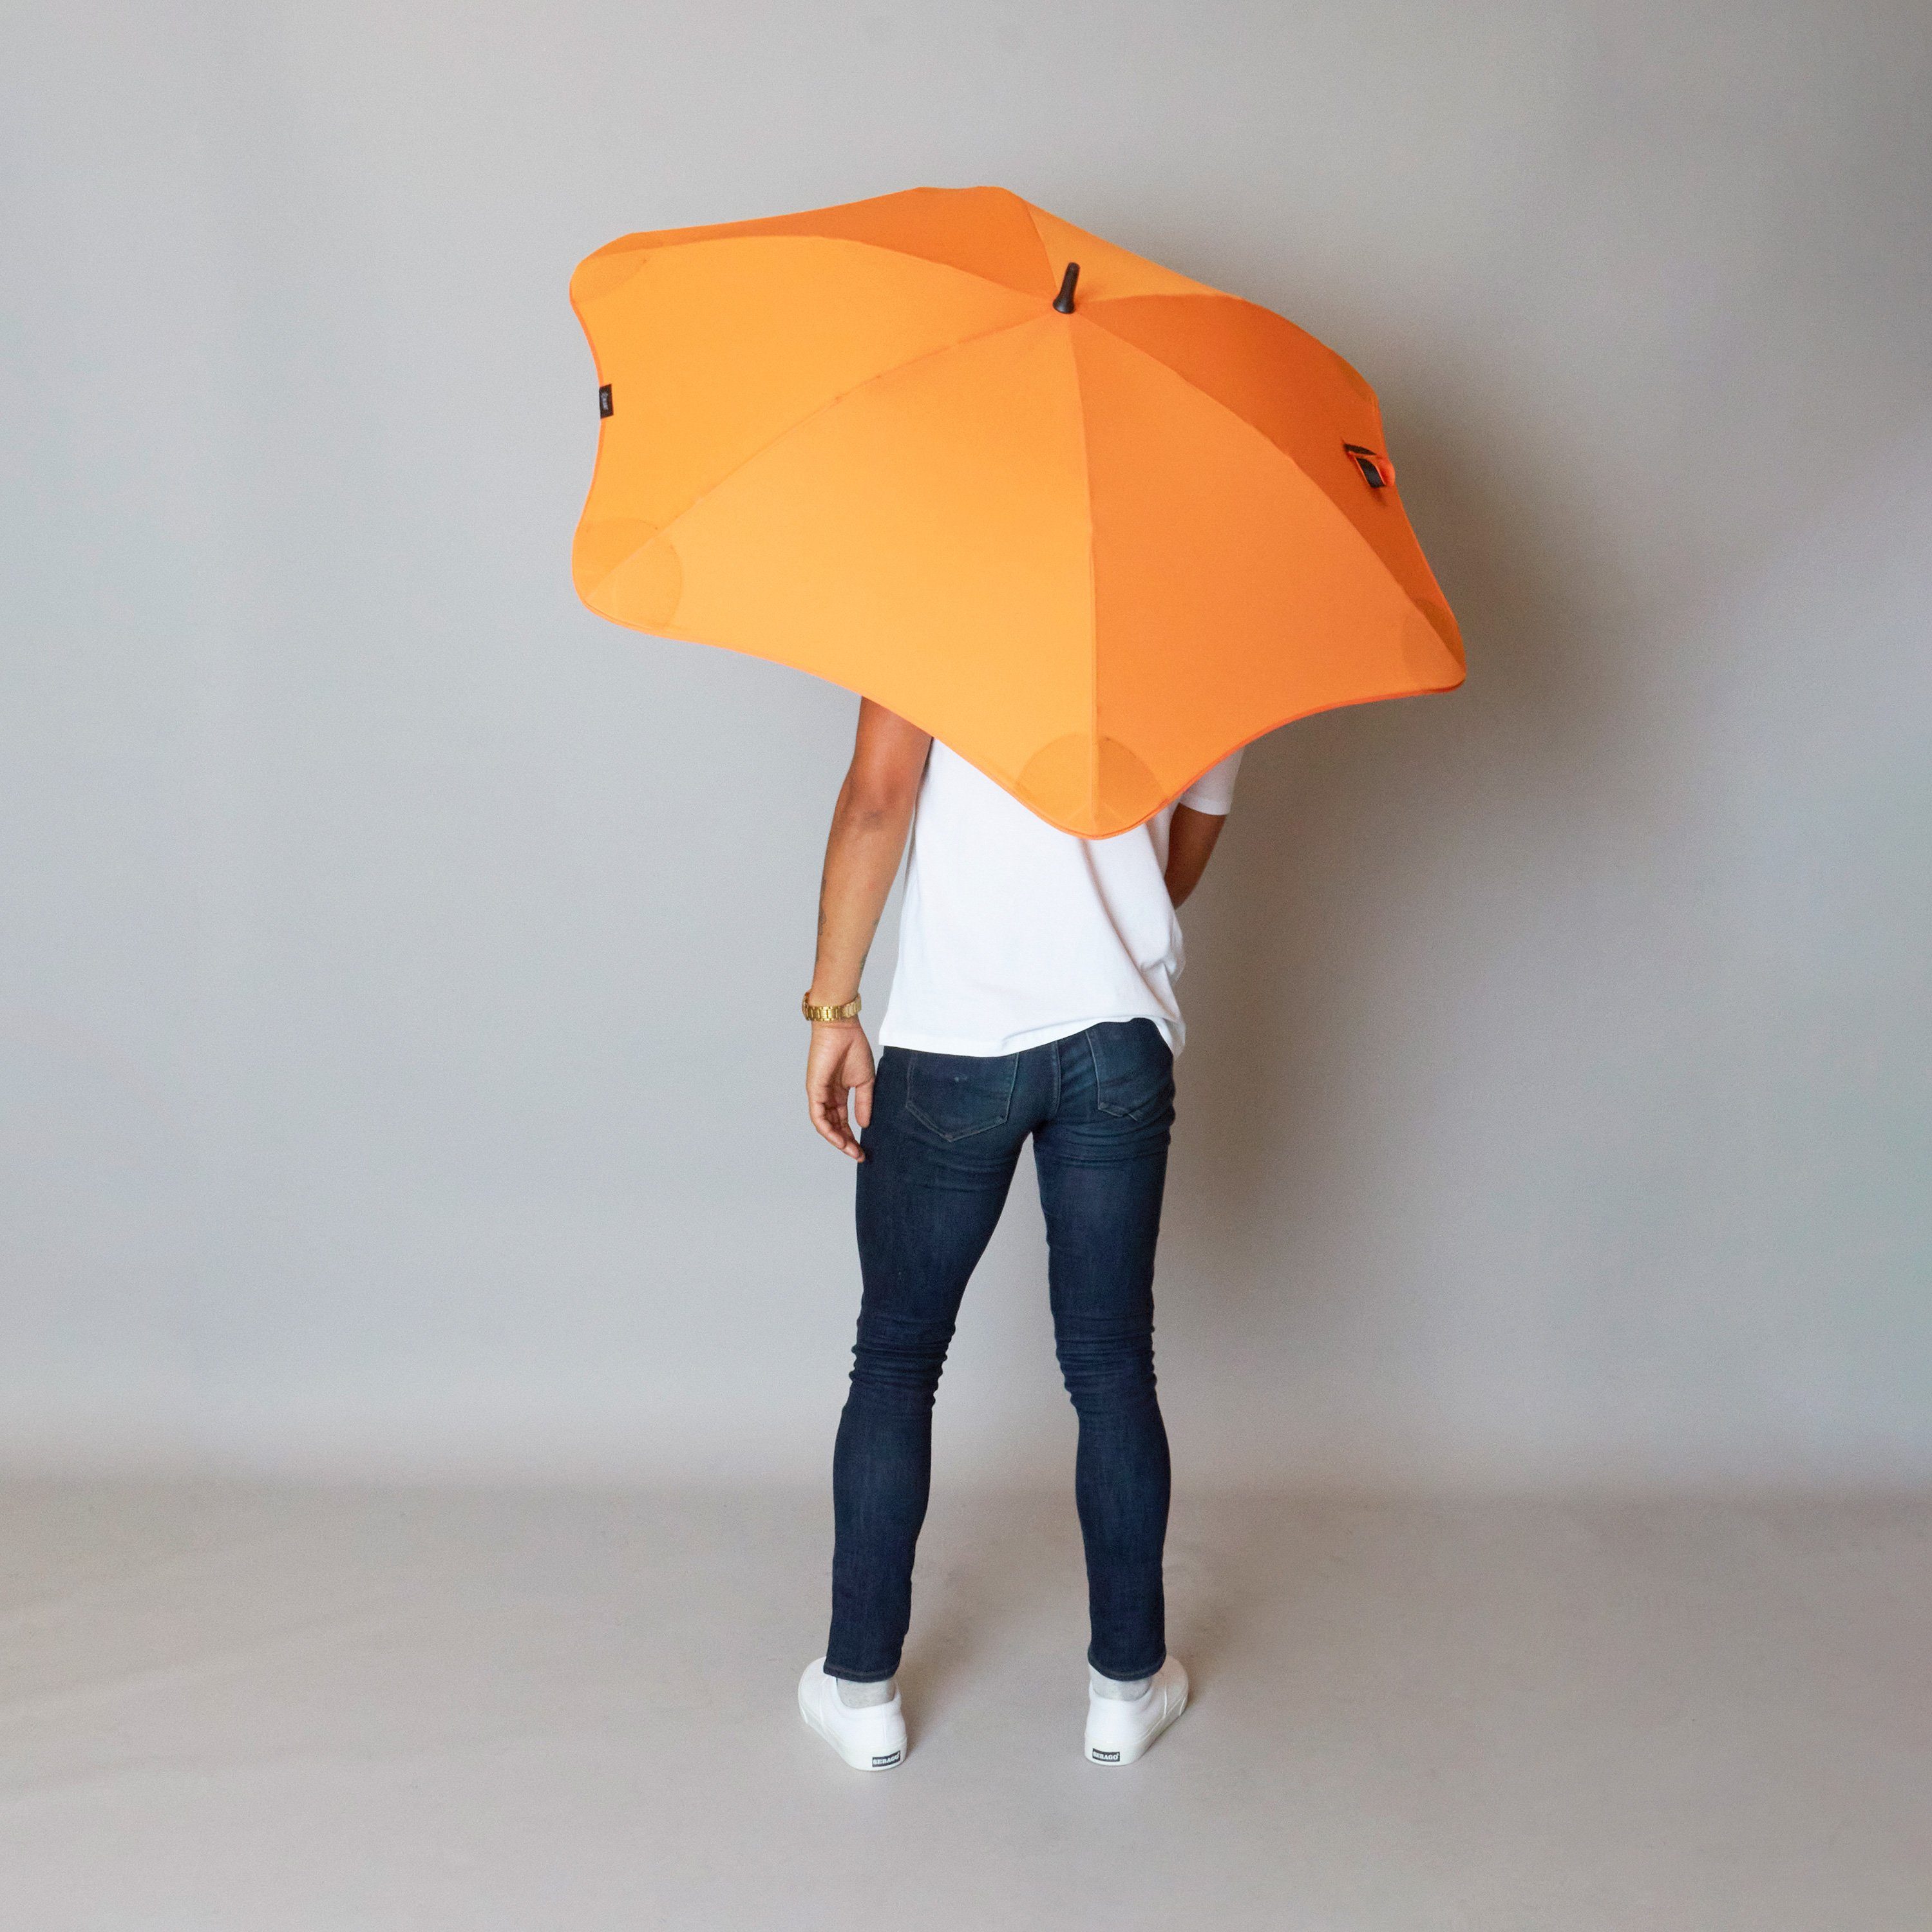 Stockregenschirm herausragende Silhouette patentierte orange einzigartige Classic, Blunt Technologie,